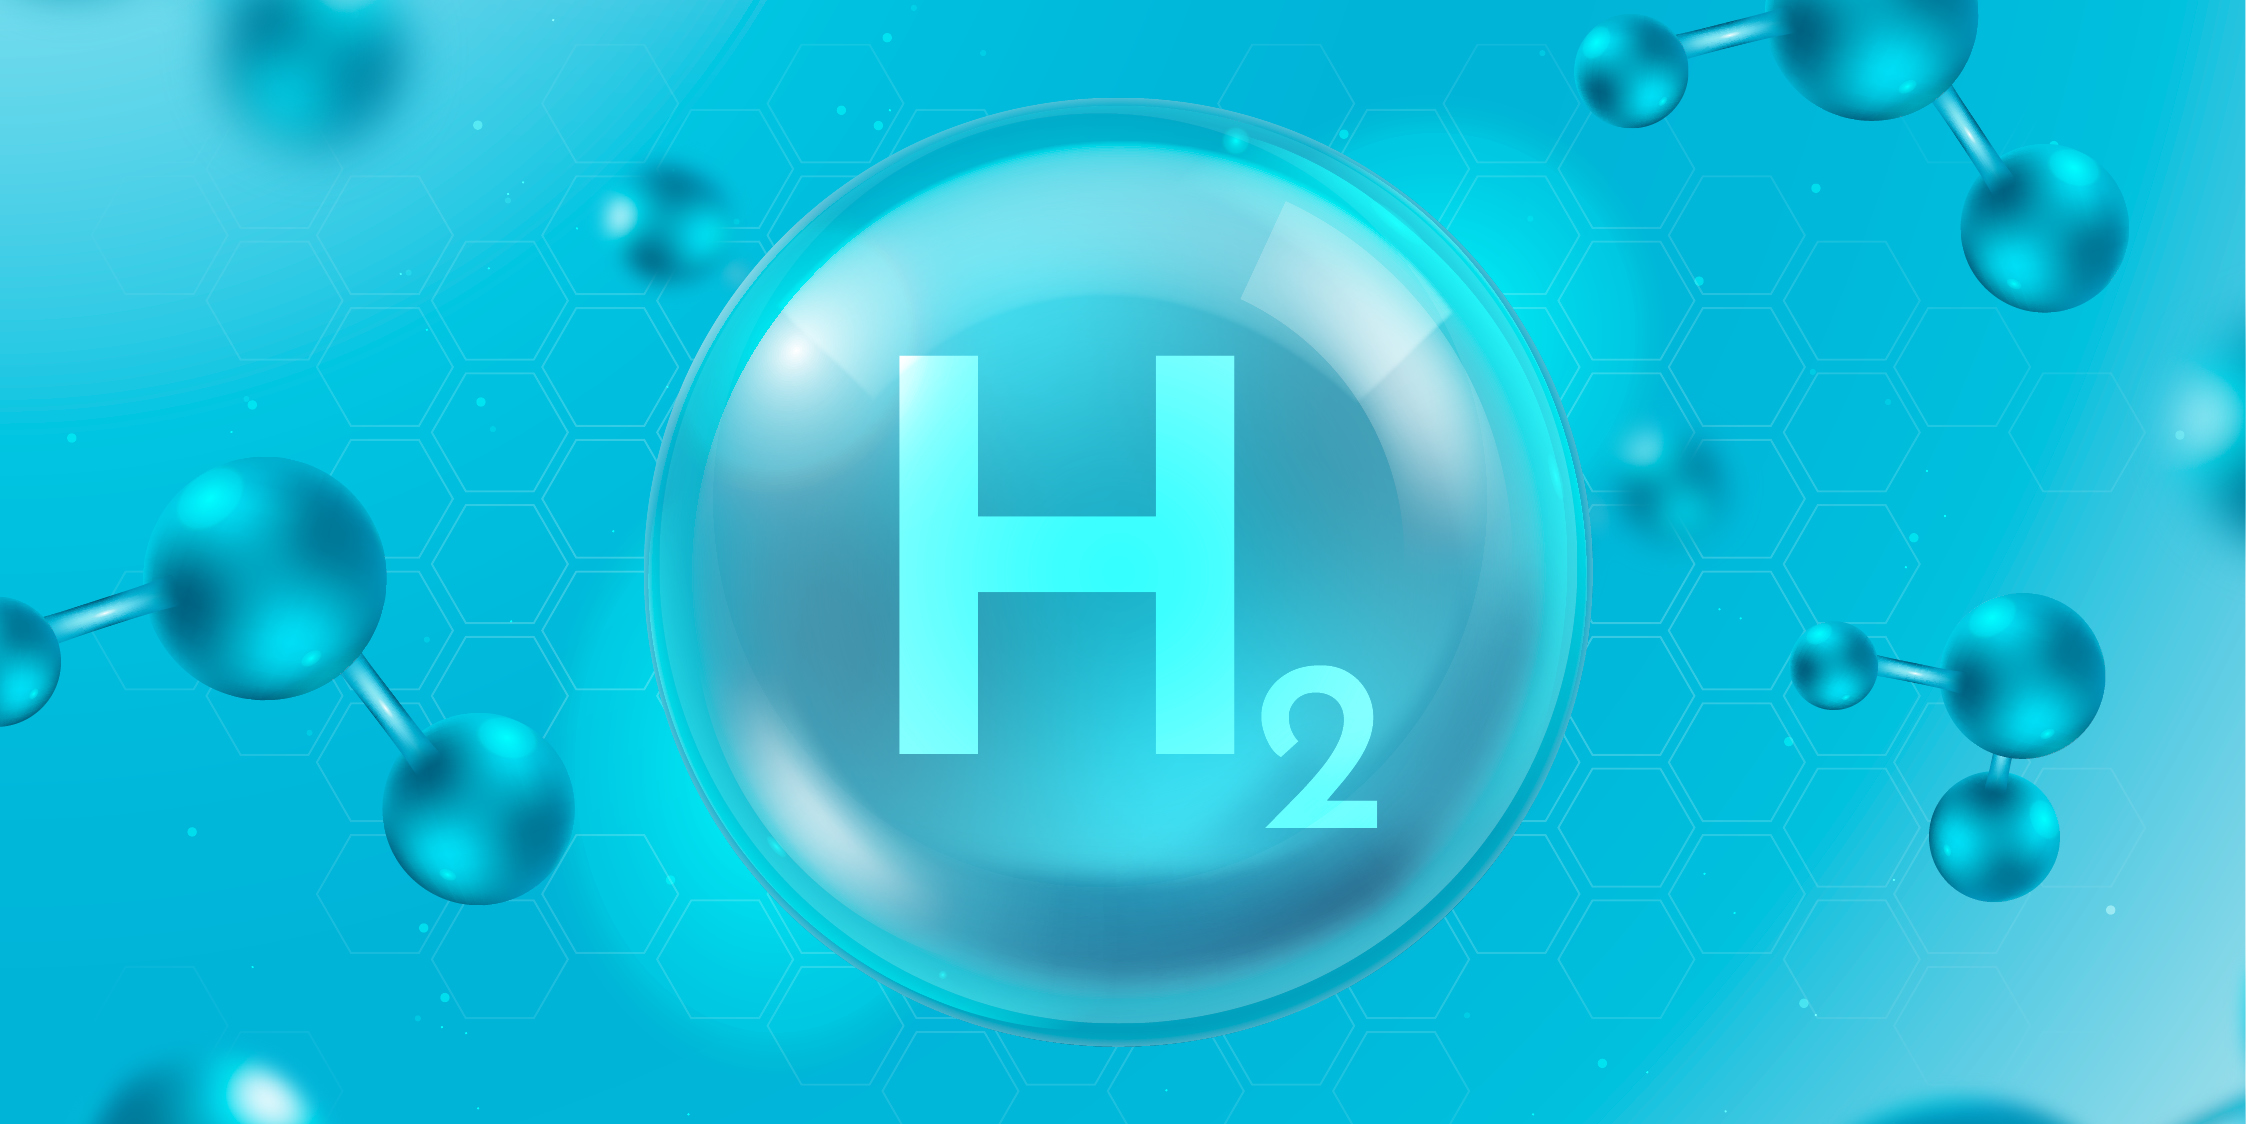 Химические свойства водорода